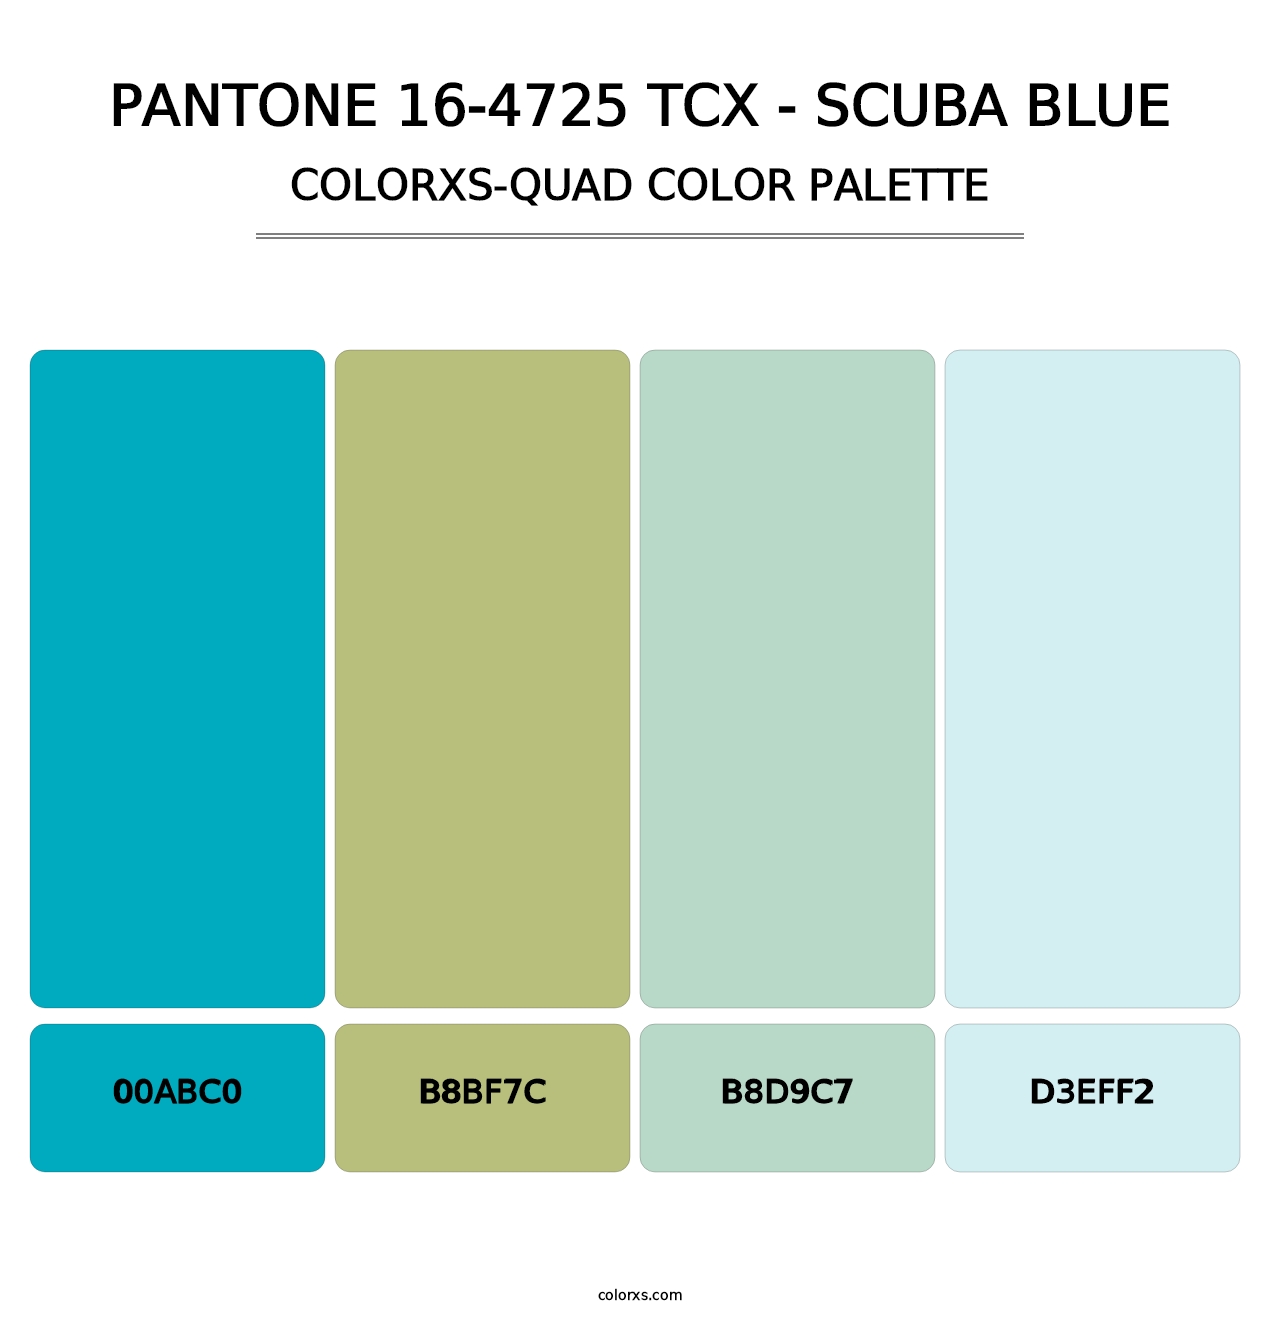 PANTONE 16-4725 TCX - Scuba Blue - Colorxs Quad Palette